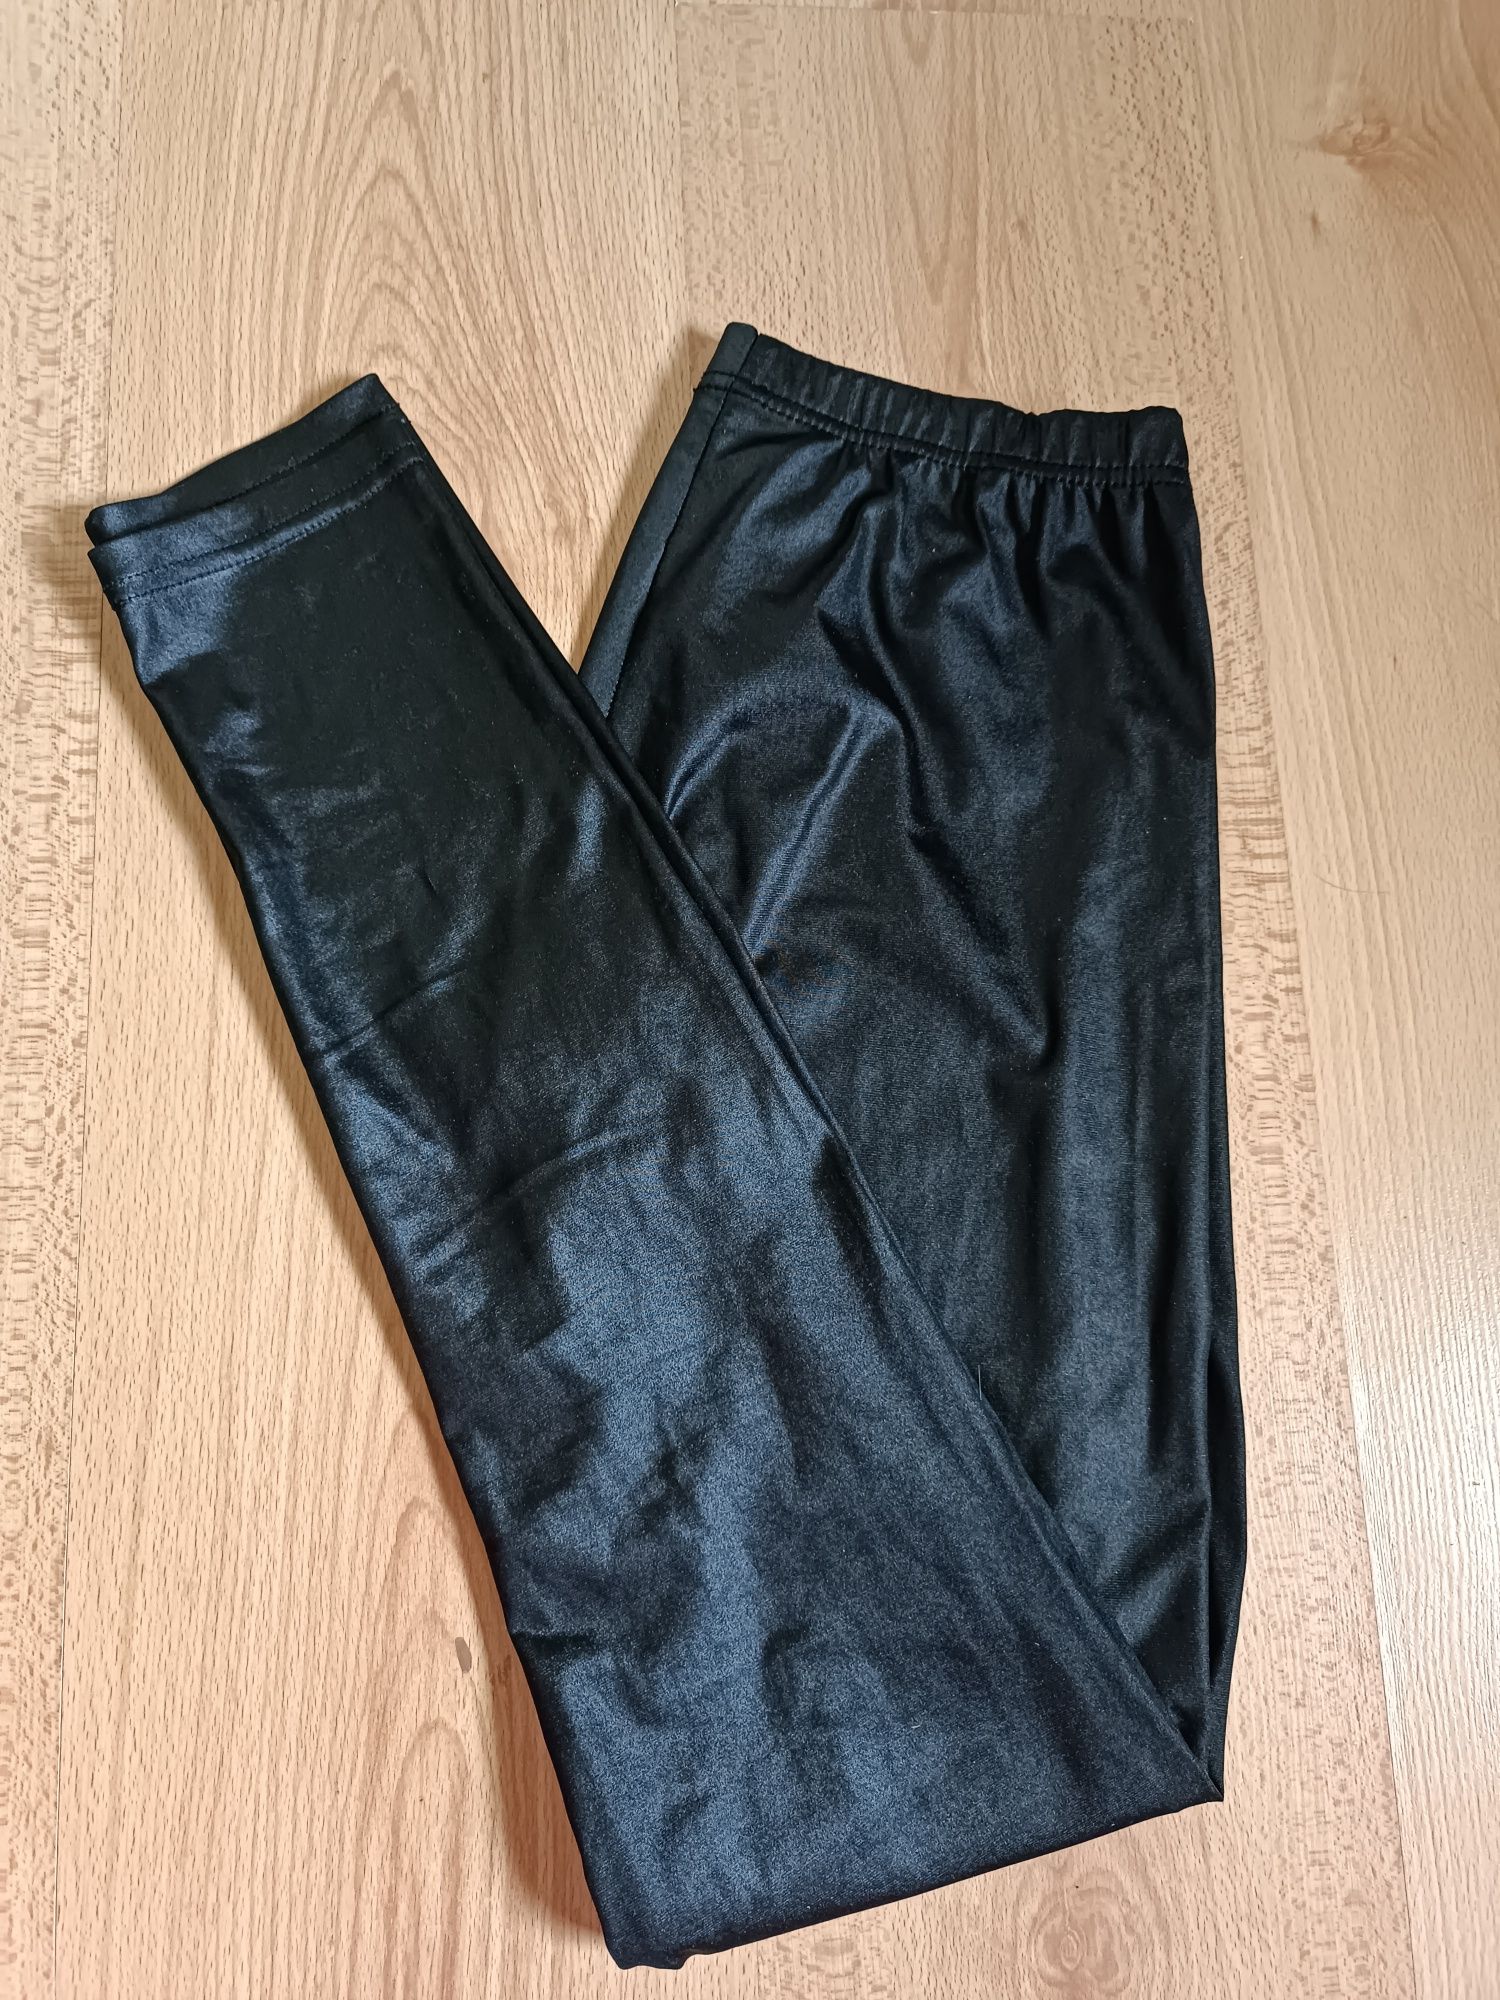 Spodnie legginsy damskie M/L